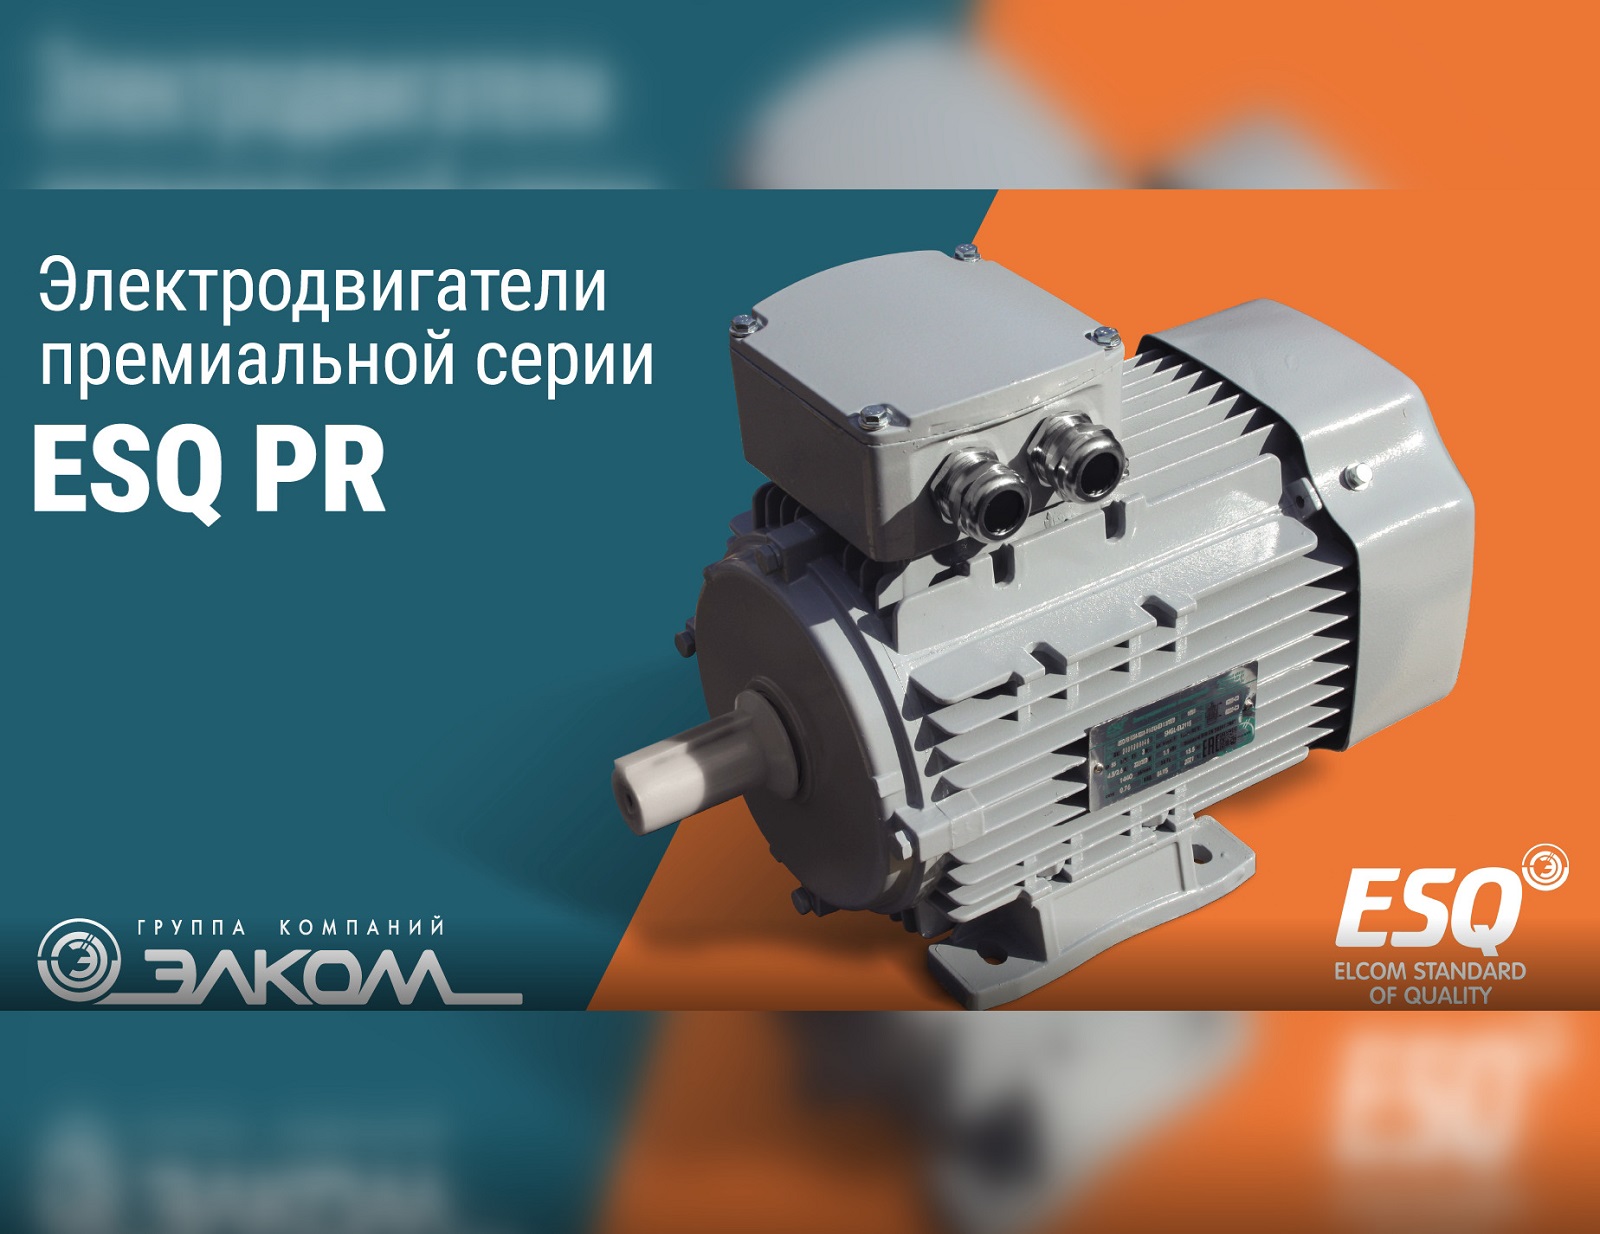 Новый промо-ролик: Премиальная серия электродвигателей ESQ PR